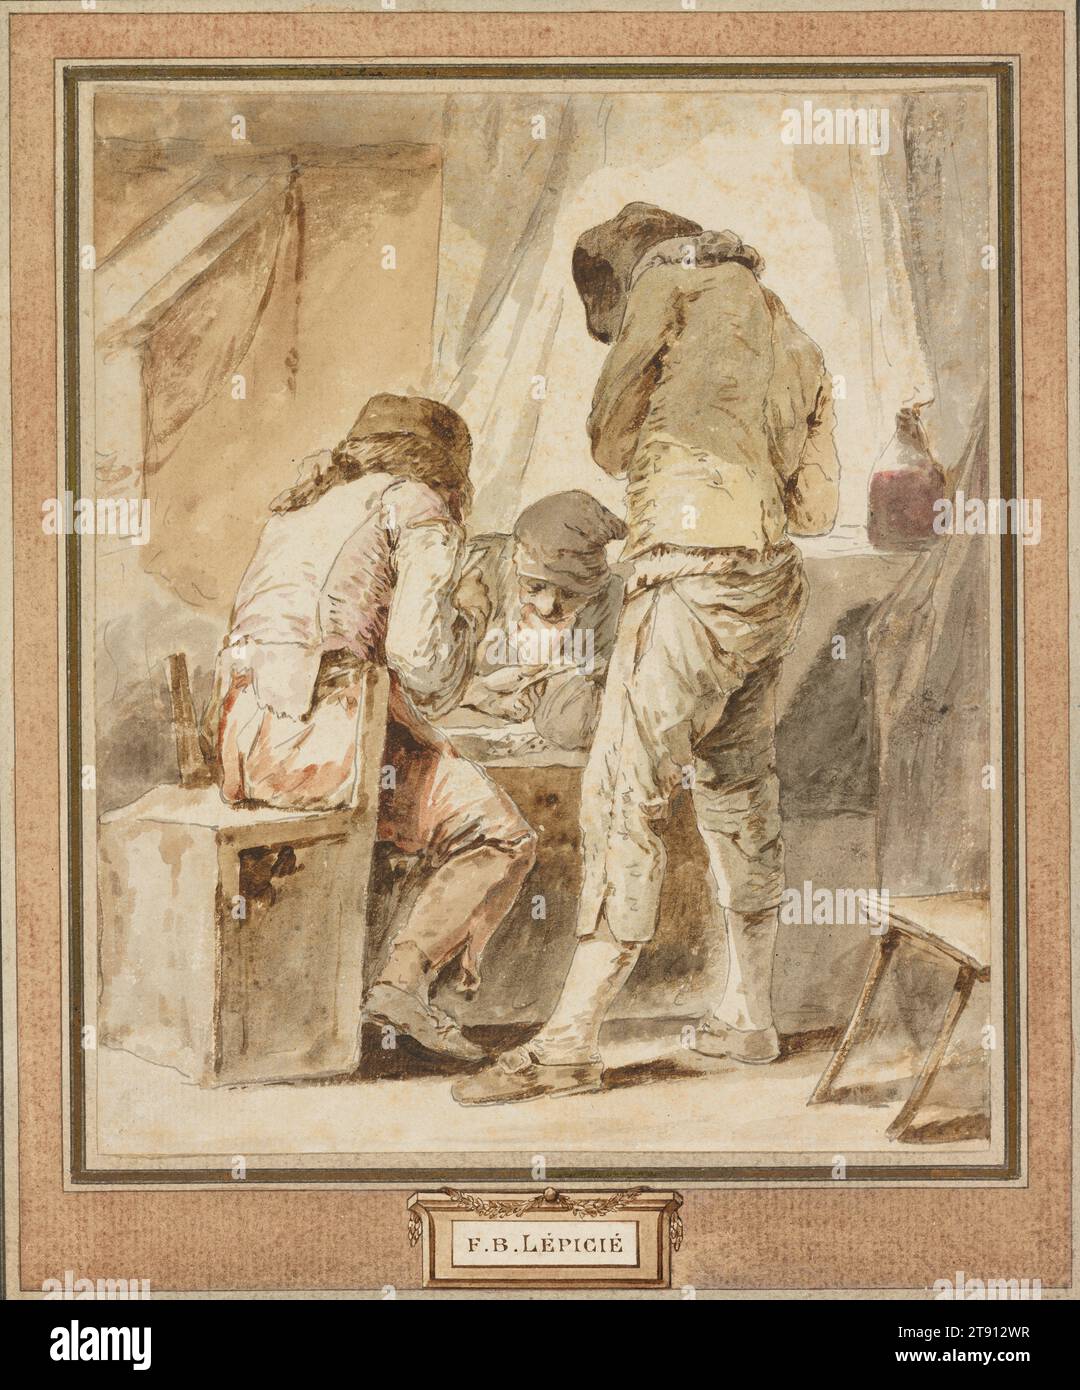 Un déménagement difficile, c. 1770-1784, Nicolas-Bernard Lépicié, français, 1735 - 1784, 8 5/8 x 7 3/4 po (21,91 x 19,69 cm) (image)12 3/4 x 10 7/8 pouces (32,39 x 27,62 cm) (montage, intégré)20 × 16 1/4 × 1 3/4 pouces (50,8 × 41,28 × 4,45 cm) (cadre extérieur), stylo et encre noire, lavis gris et brun, aquarelle, France, 18e siècle, Lépicié établit sa réputation de peintre d’histoire – la catégorie la plus prestigieuse de l’Académie Royale – mais excelle aussi dans d’autres matières. Ses scènes de la vie quotidienne ont été admirées à son époque et sont maintenant ses œuvres les plus célèbres Banque D'Images